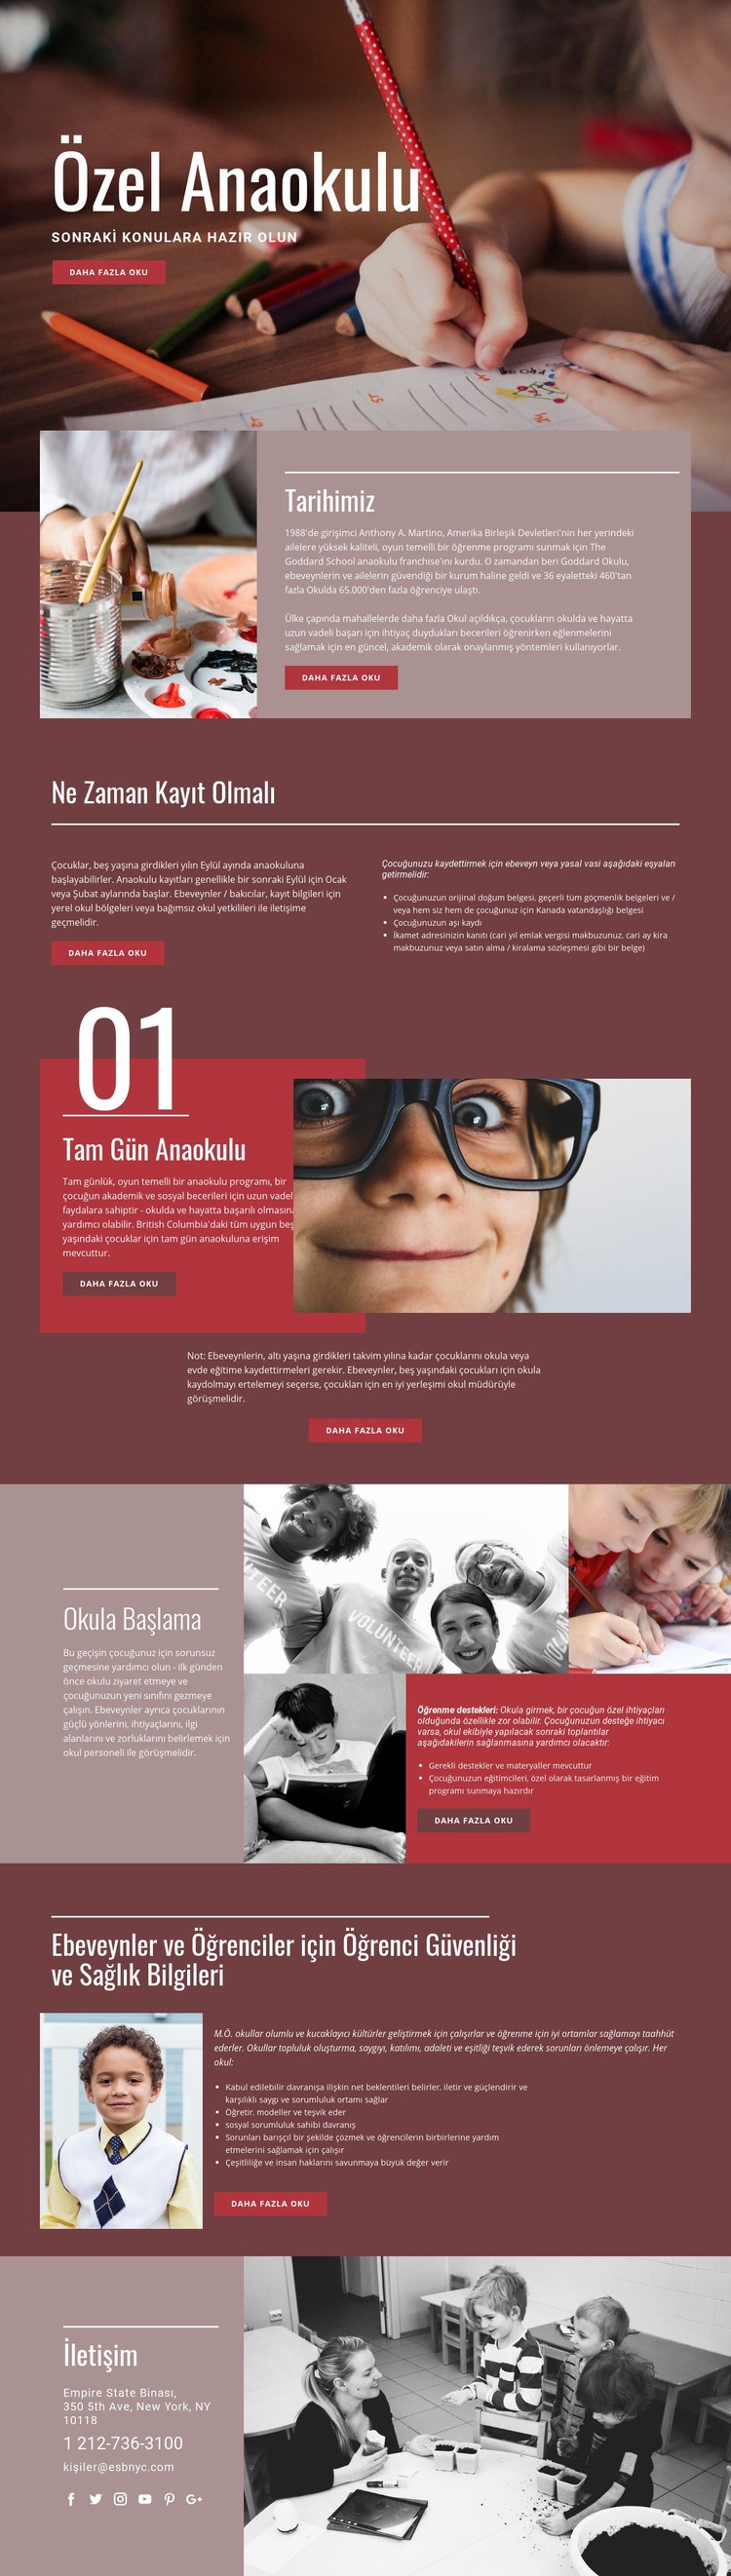 Özel ilköğretim Web sitesi tasarımı